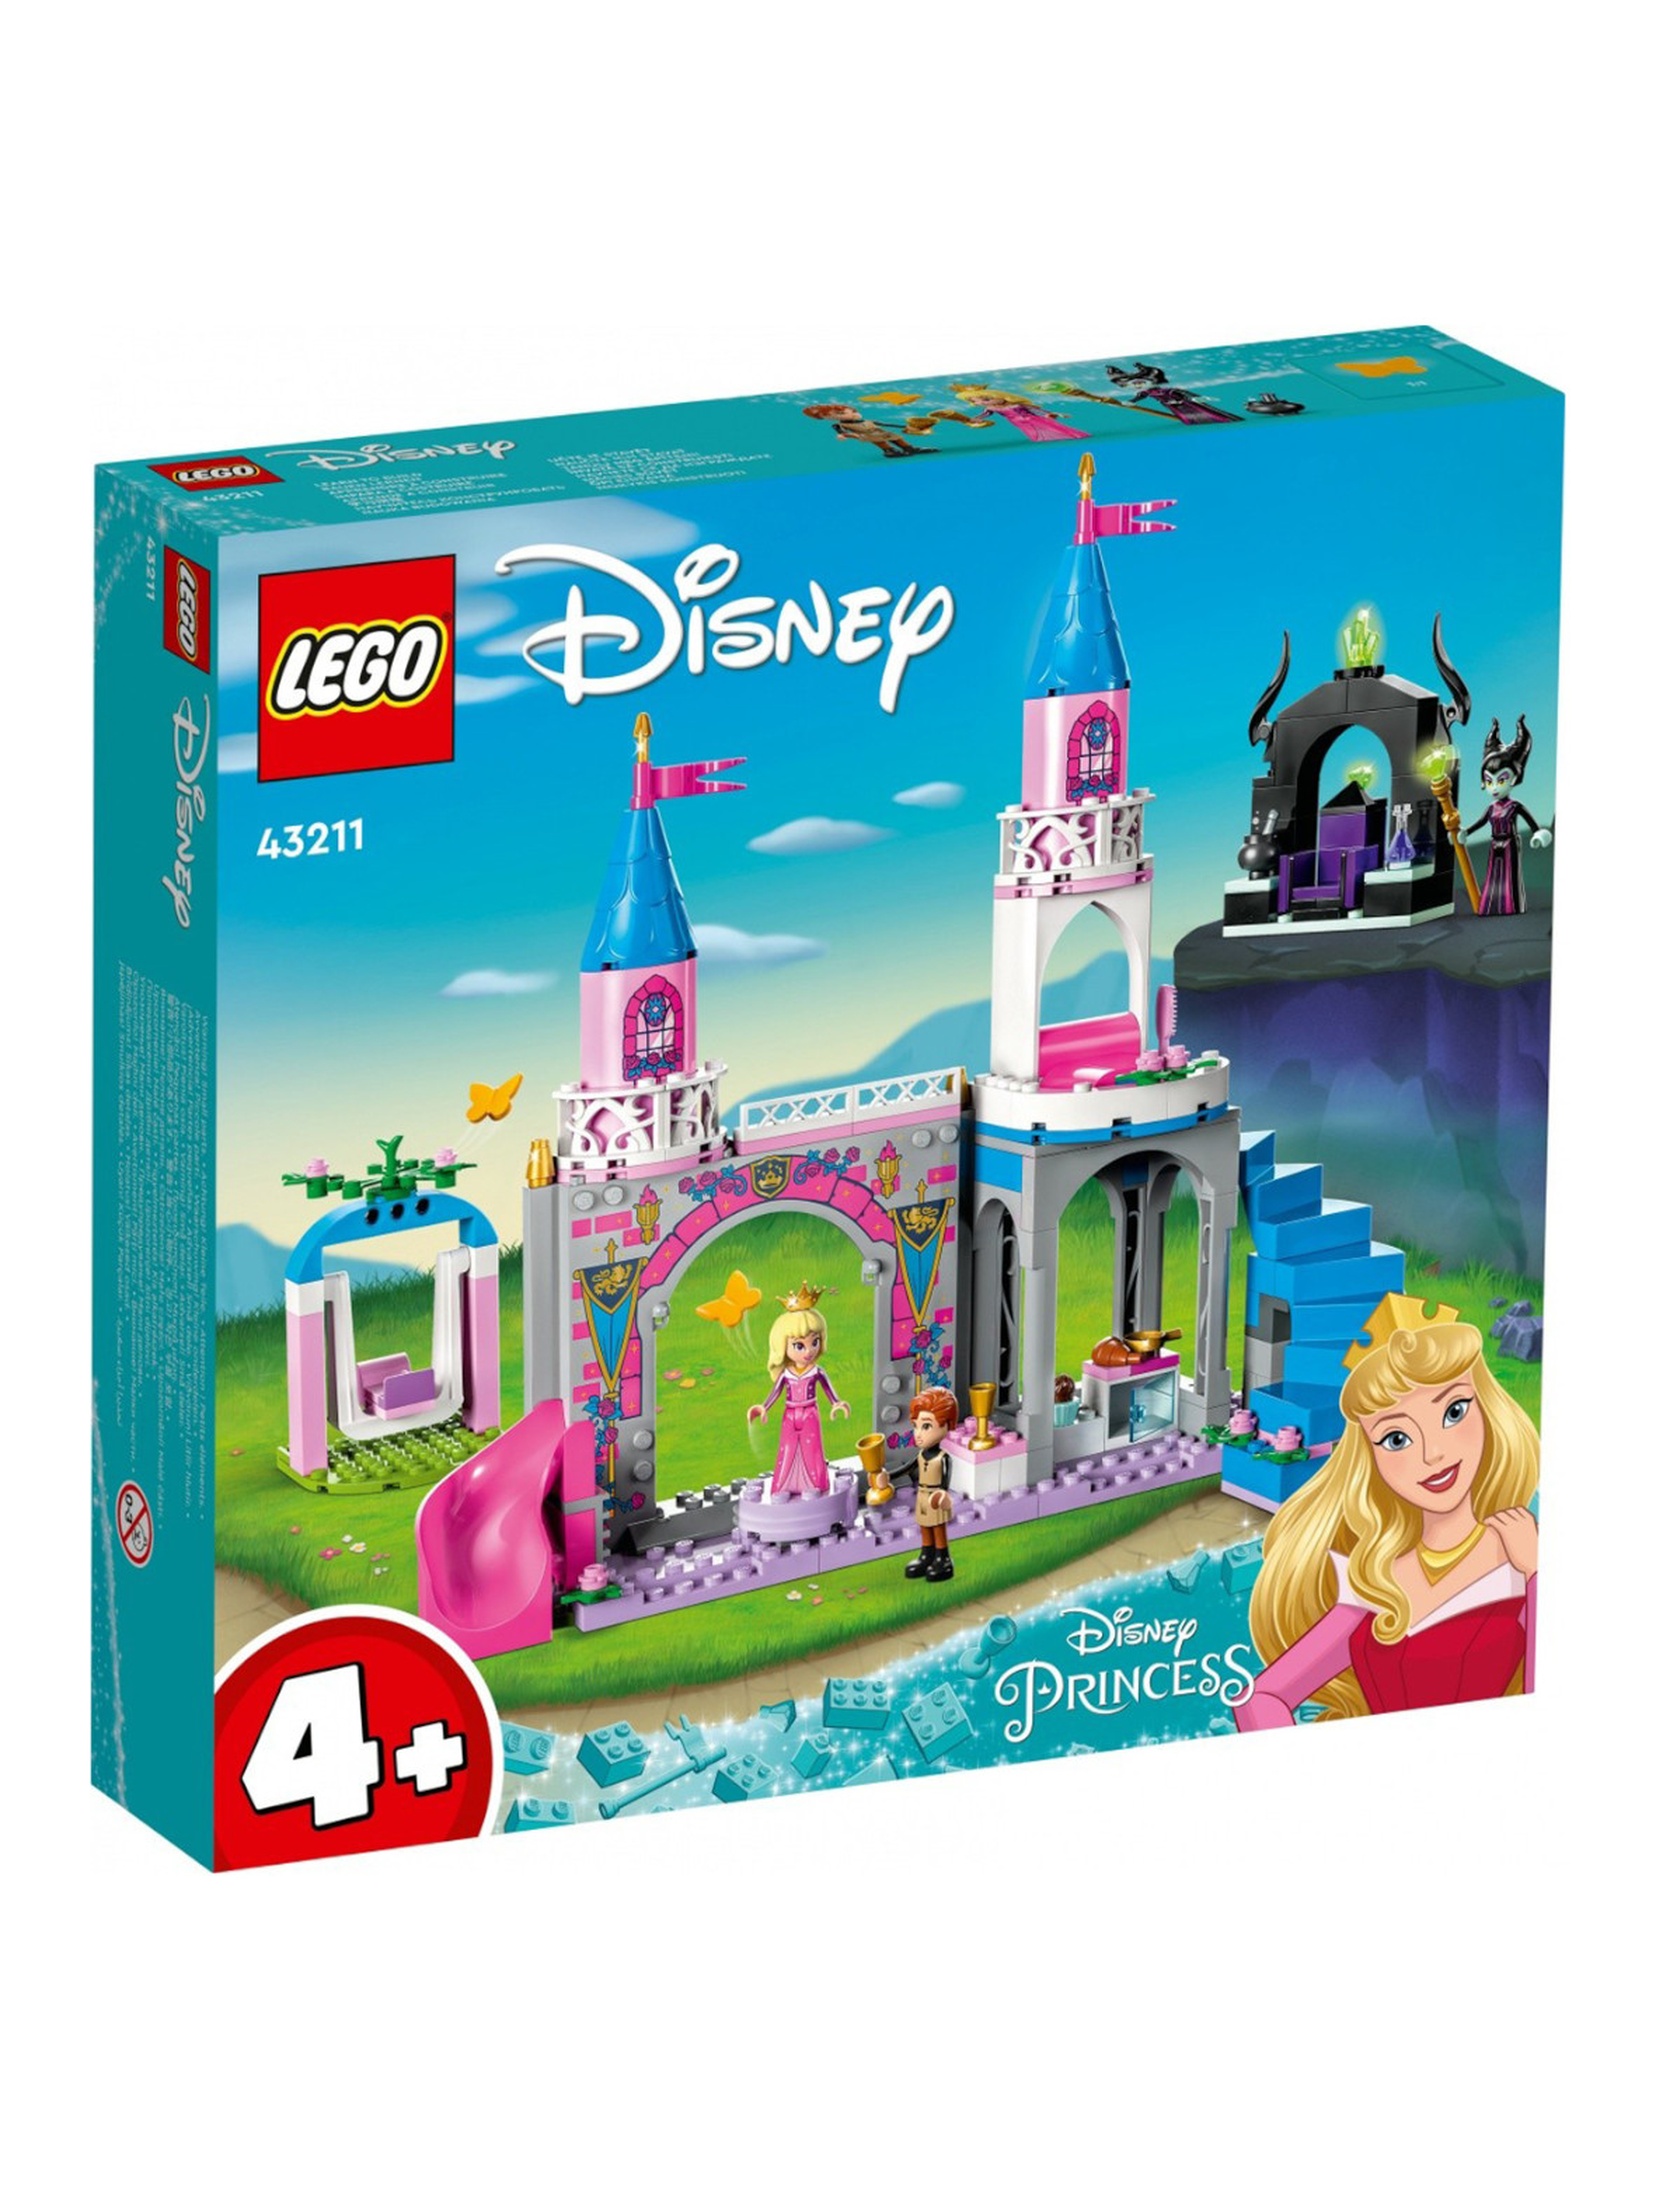 Klocki LEGO Disney Princess 43211 Zamek Aurory - 187 elementów, wiek 4 +